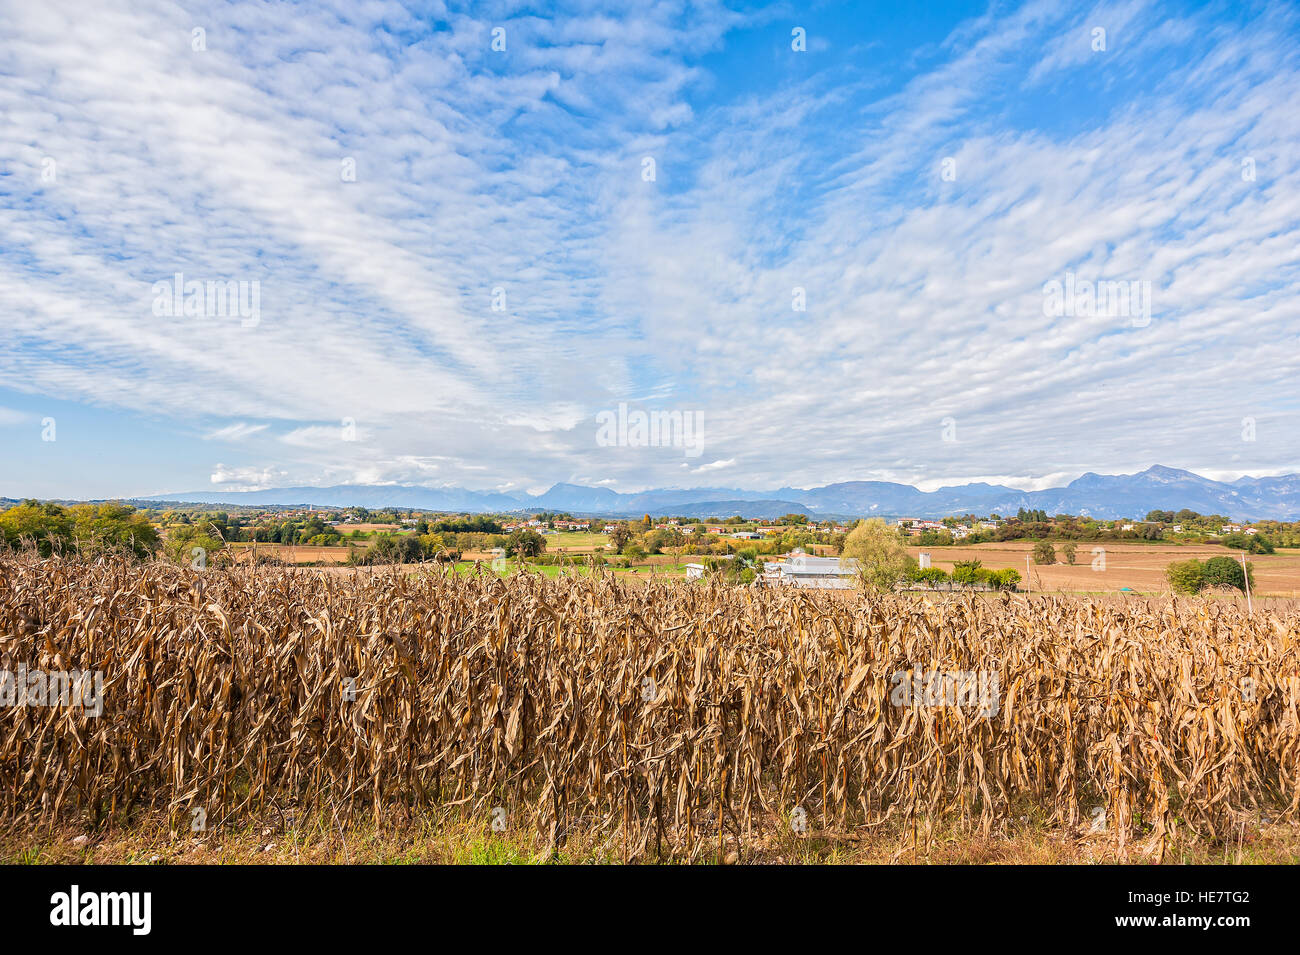 Paesaggio rurale: Campo di grano pronto per la mietitura. Sullo sfondo le montagne. Cielo blu con nuvole Foto Stock